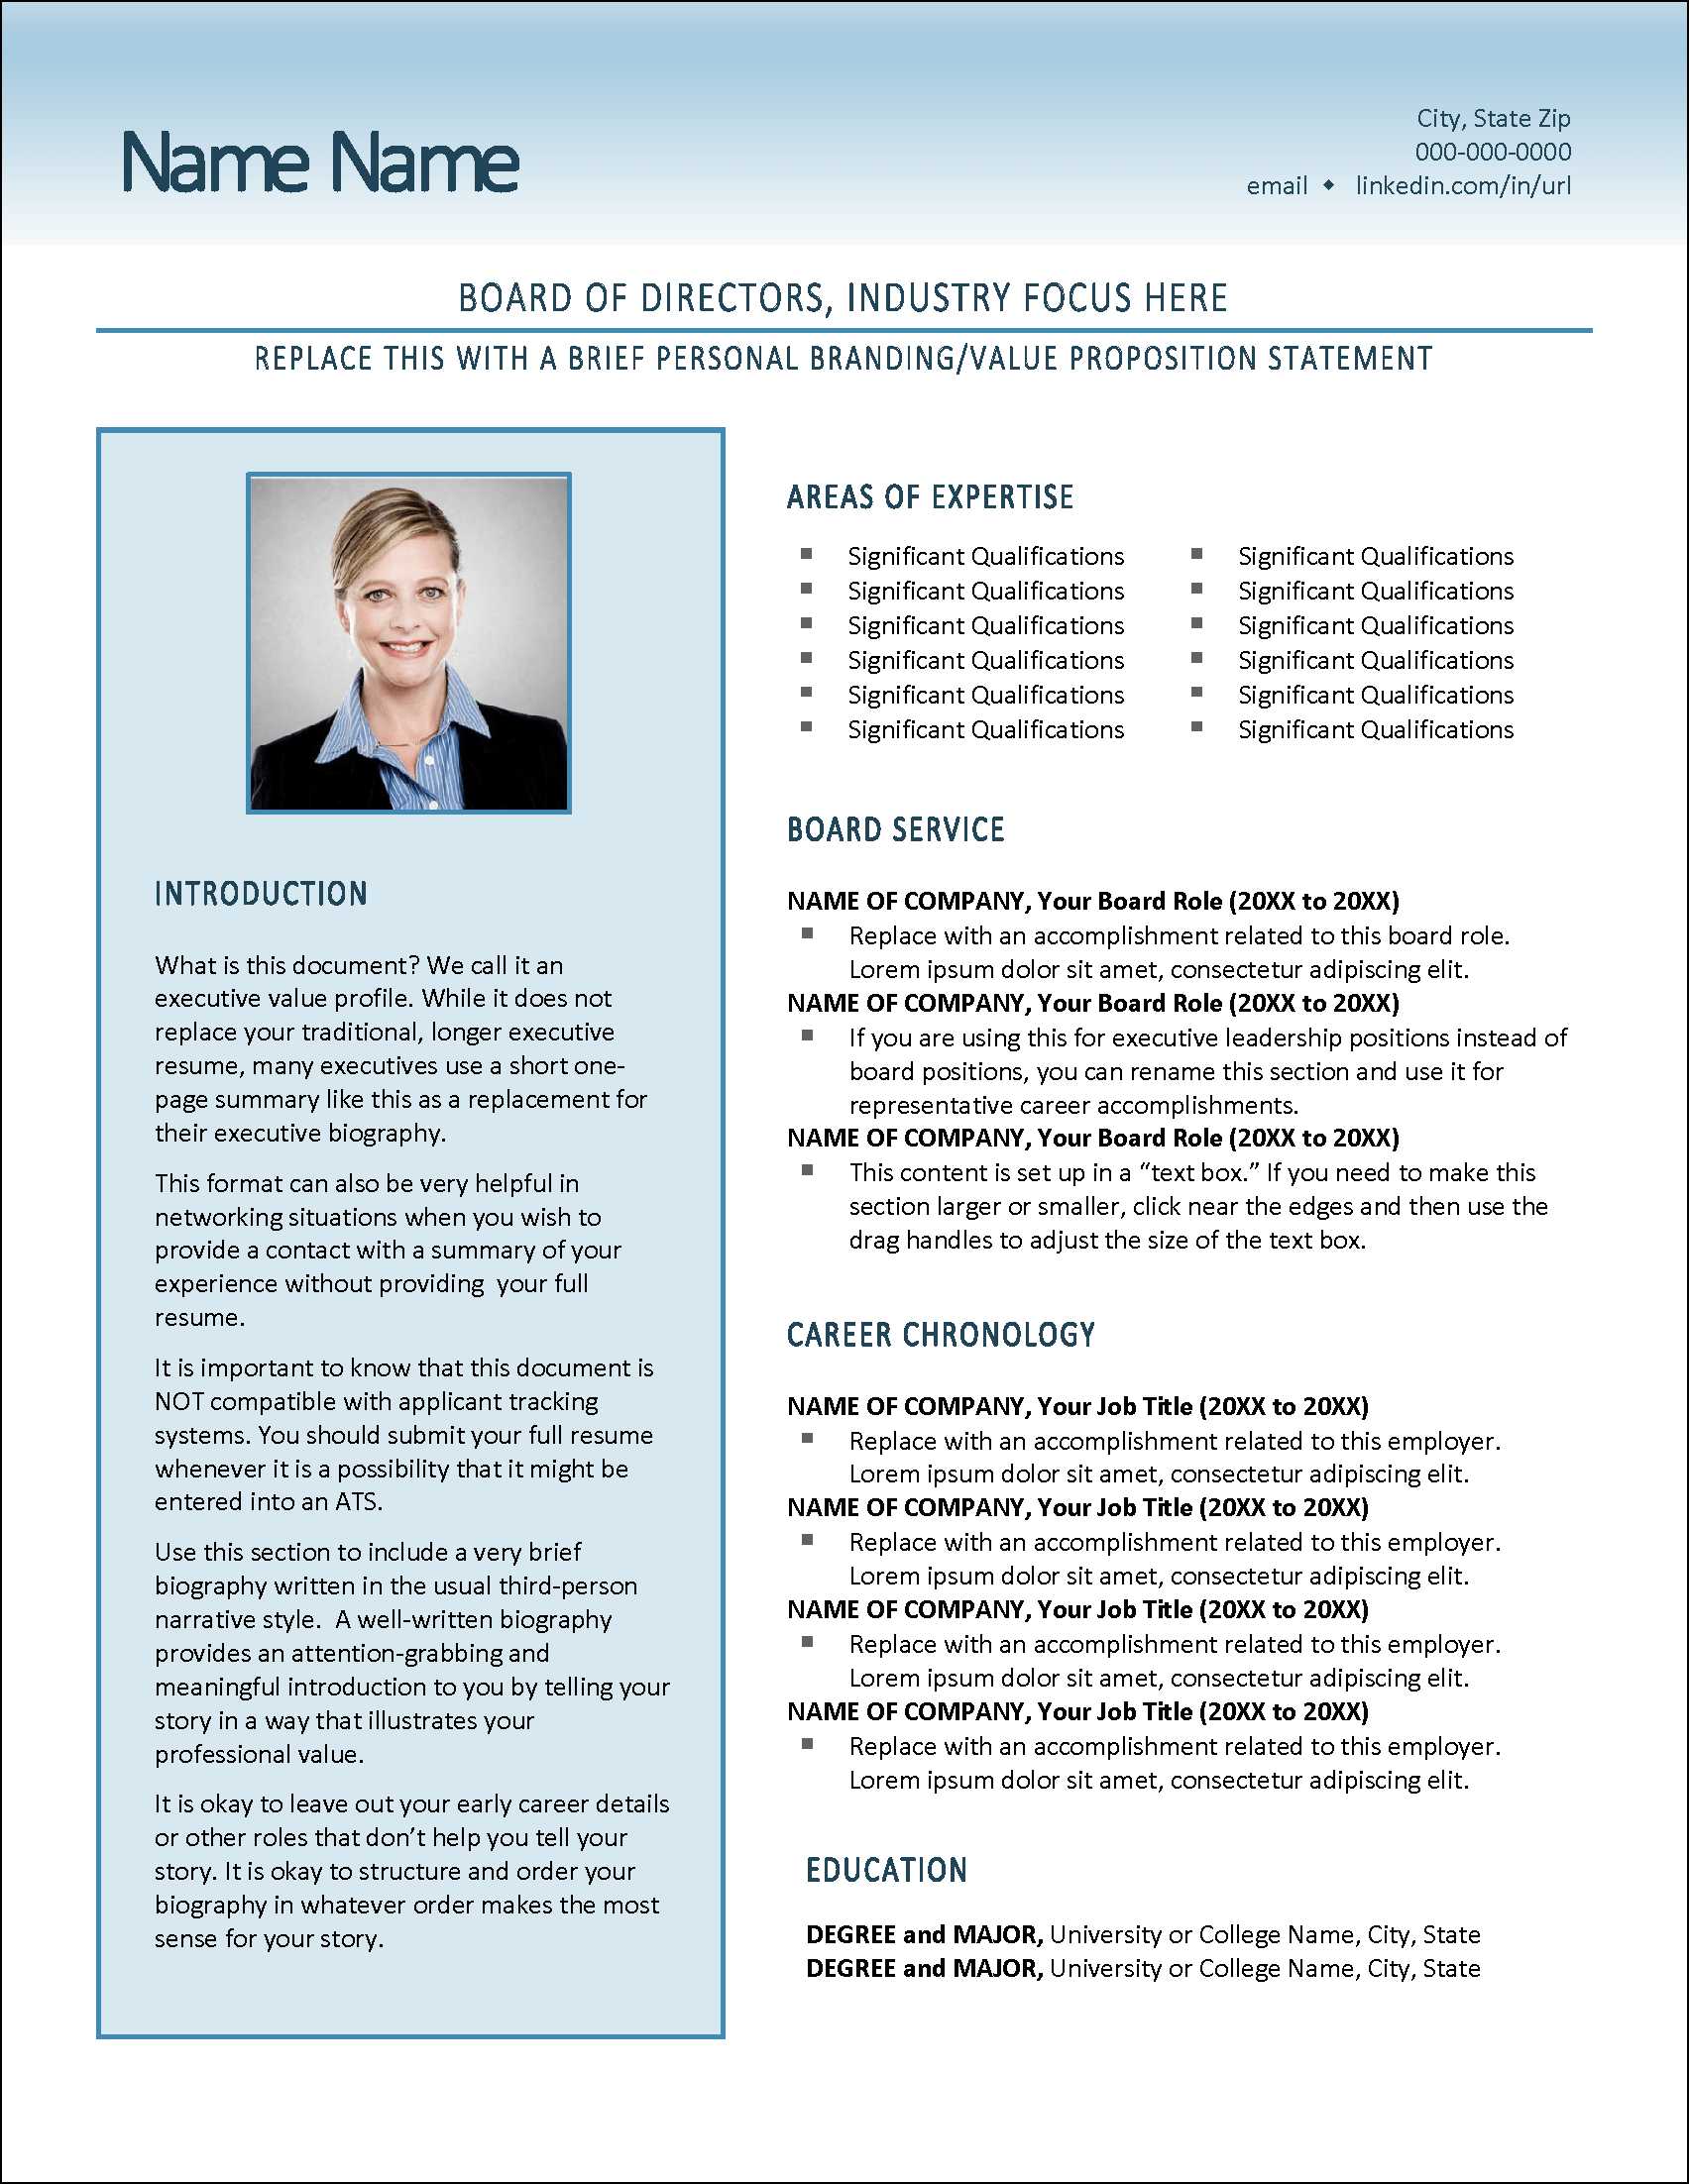 Board Pro Value Profile